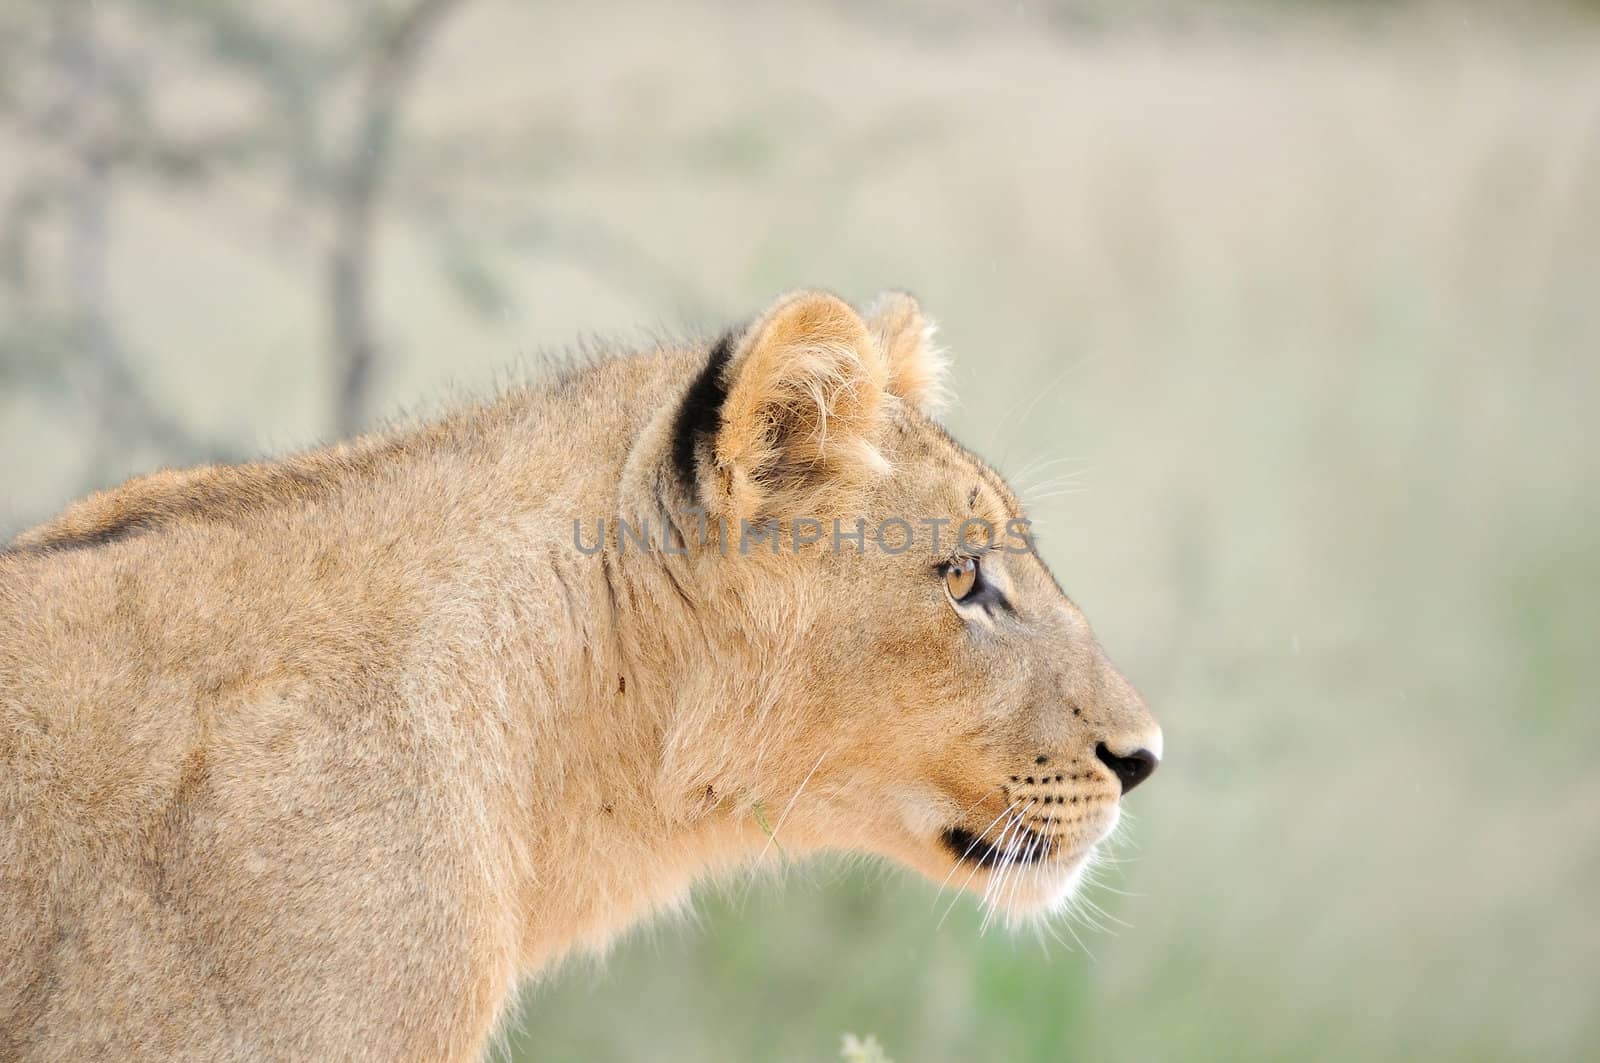 A lion cub, Kgalagadi Transfrontier Park.